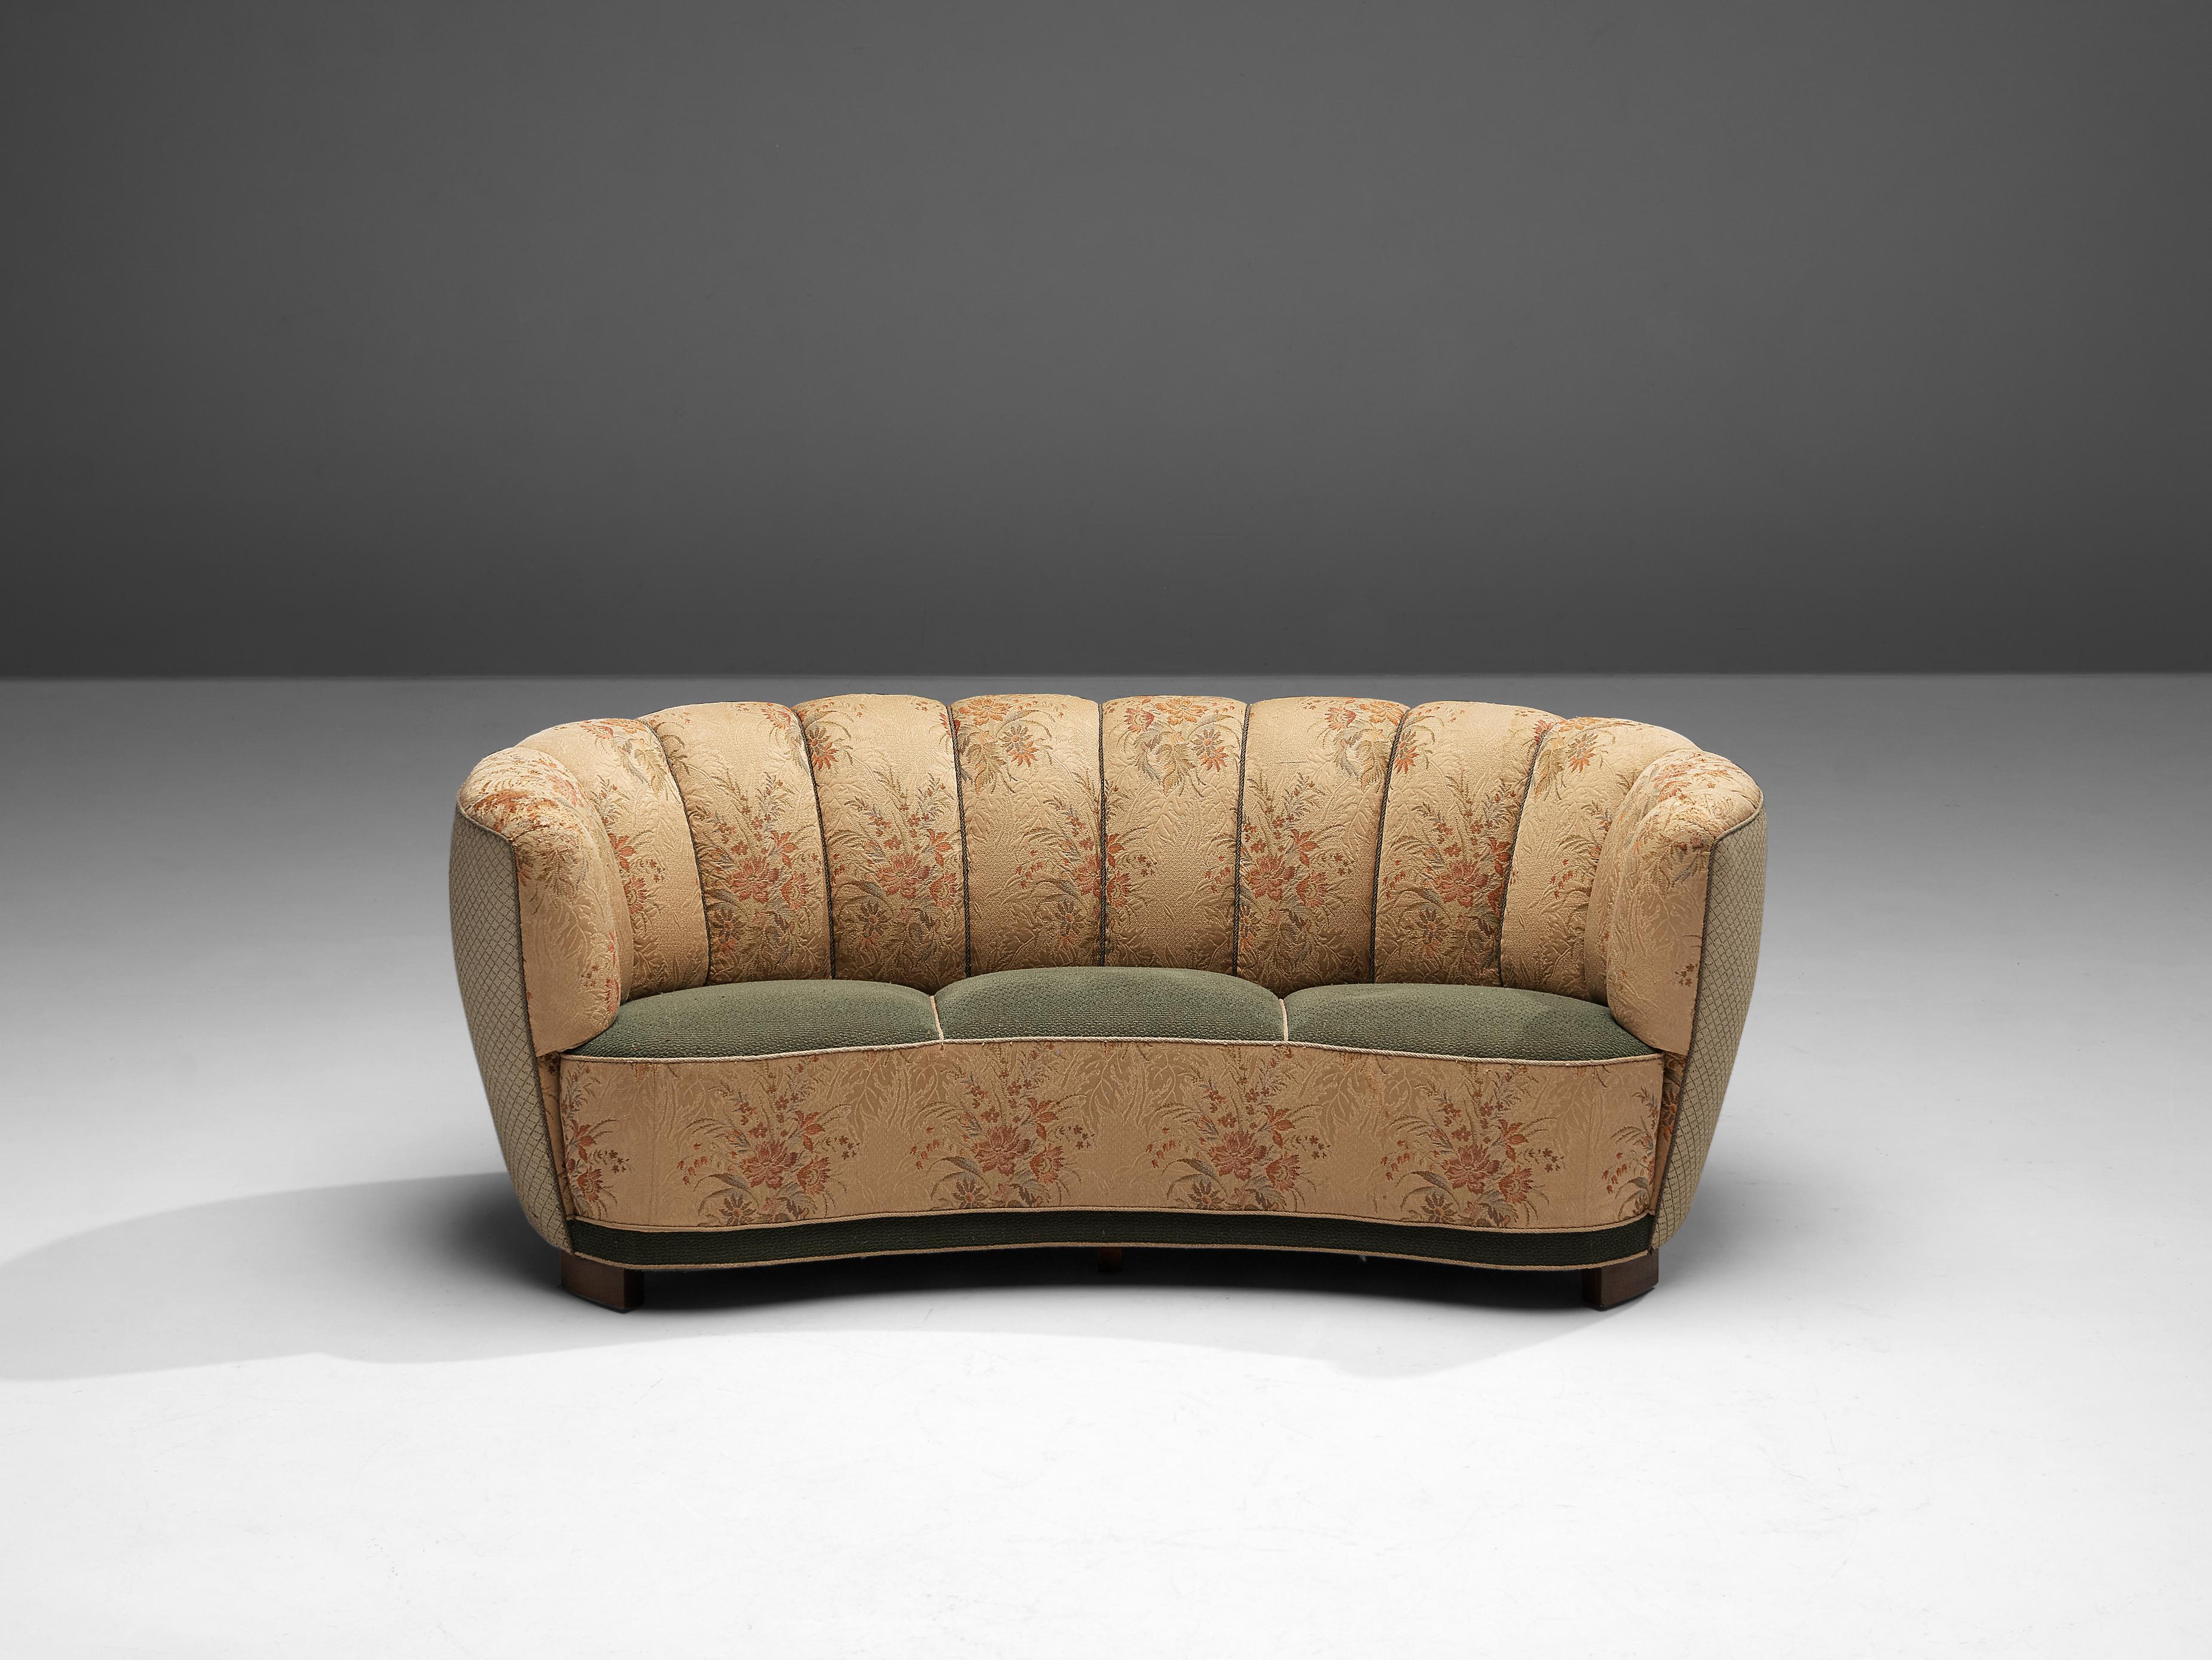 Bananensofa, geblümte Polsterung, Holz, Dänemark, 1940er Jahre.

Dieses üppige Sofa ist mit einem geblümten Stoff und Holzbeinen ausgestattet. Das Sofa hat eine hochgezogene und geschwungene Rückenlehne. Die Rückenlehne ist geschwungen und geht in